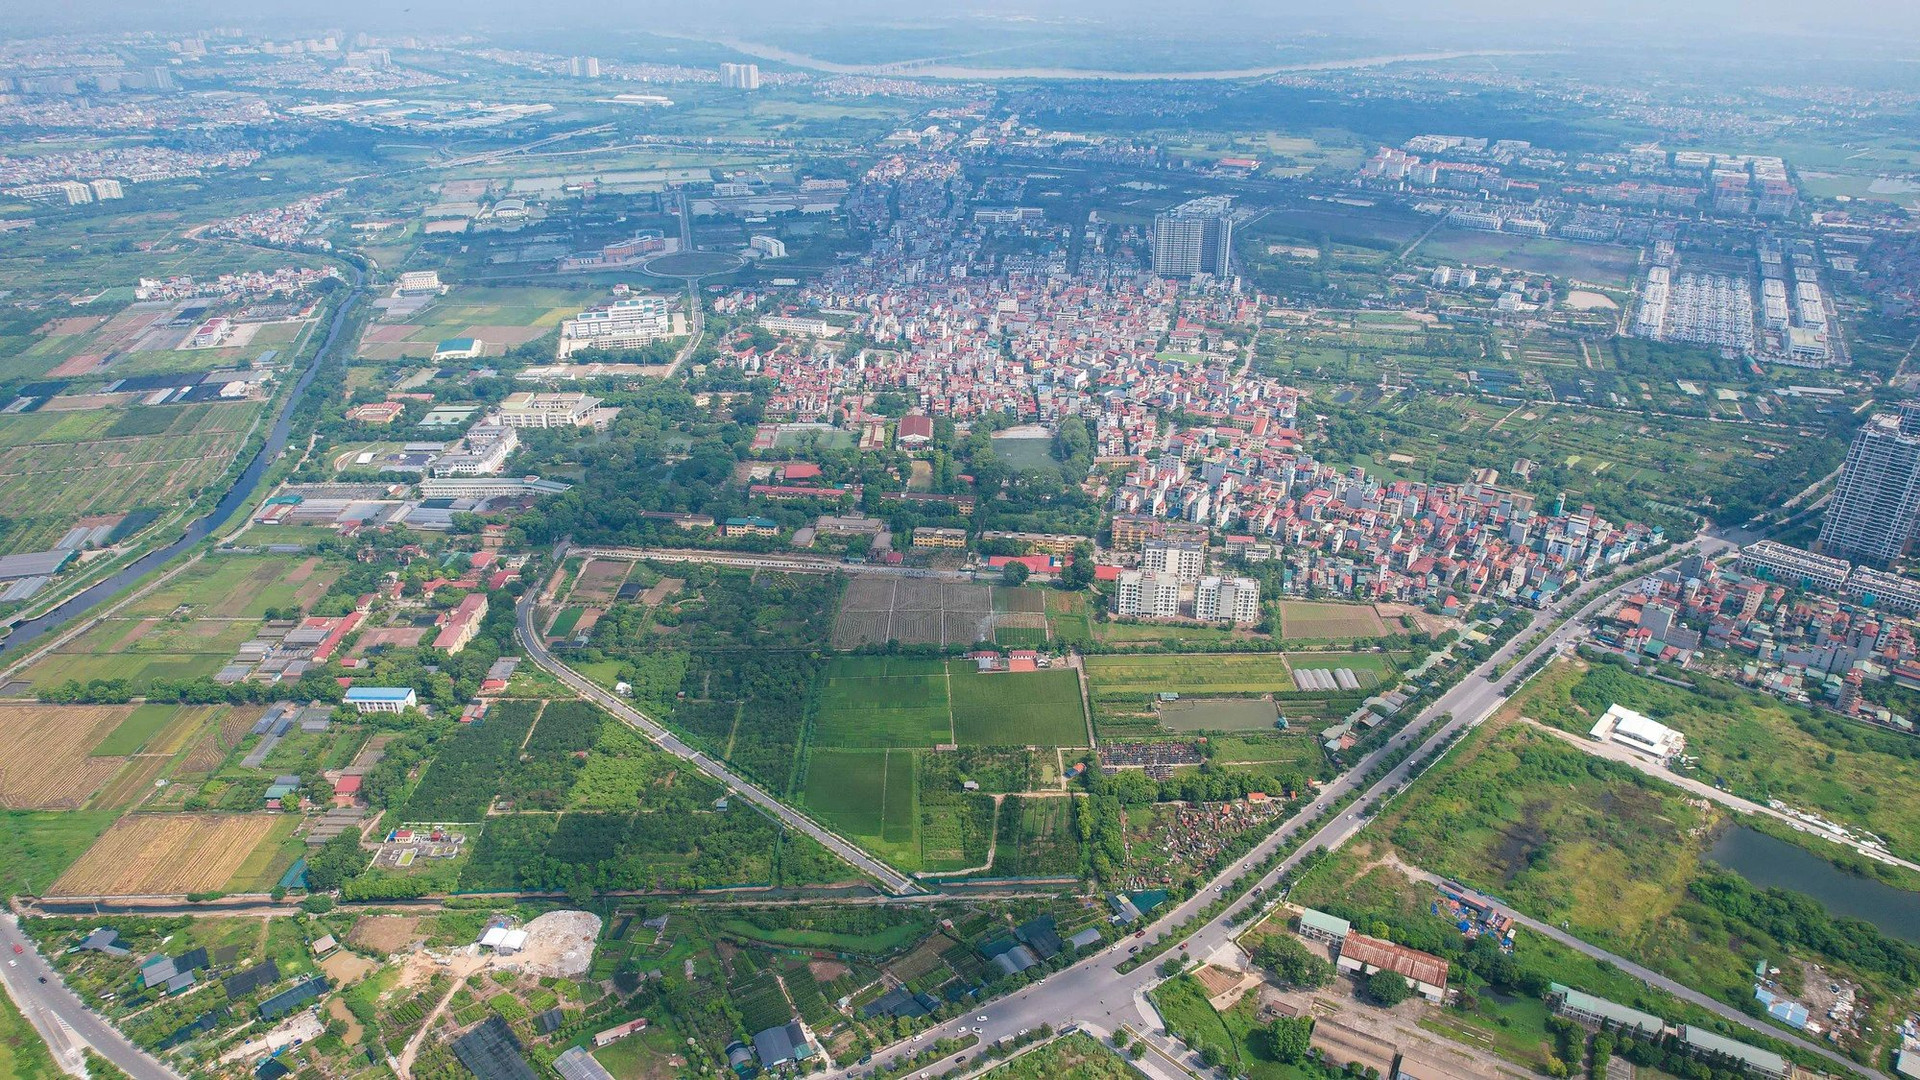 Huyện ngoại thành Hà Nội sắp lên quận, một phần được điều chỉnh thành đô thị trung tâm mới của Thủ đô - Ảnh 2.